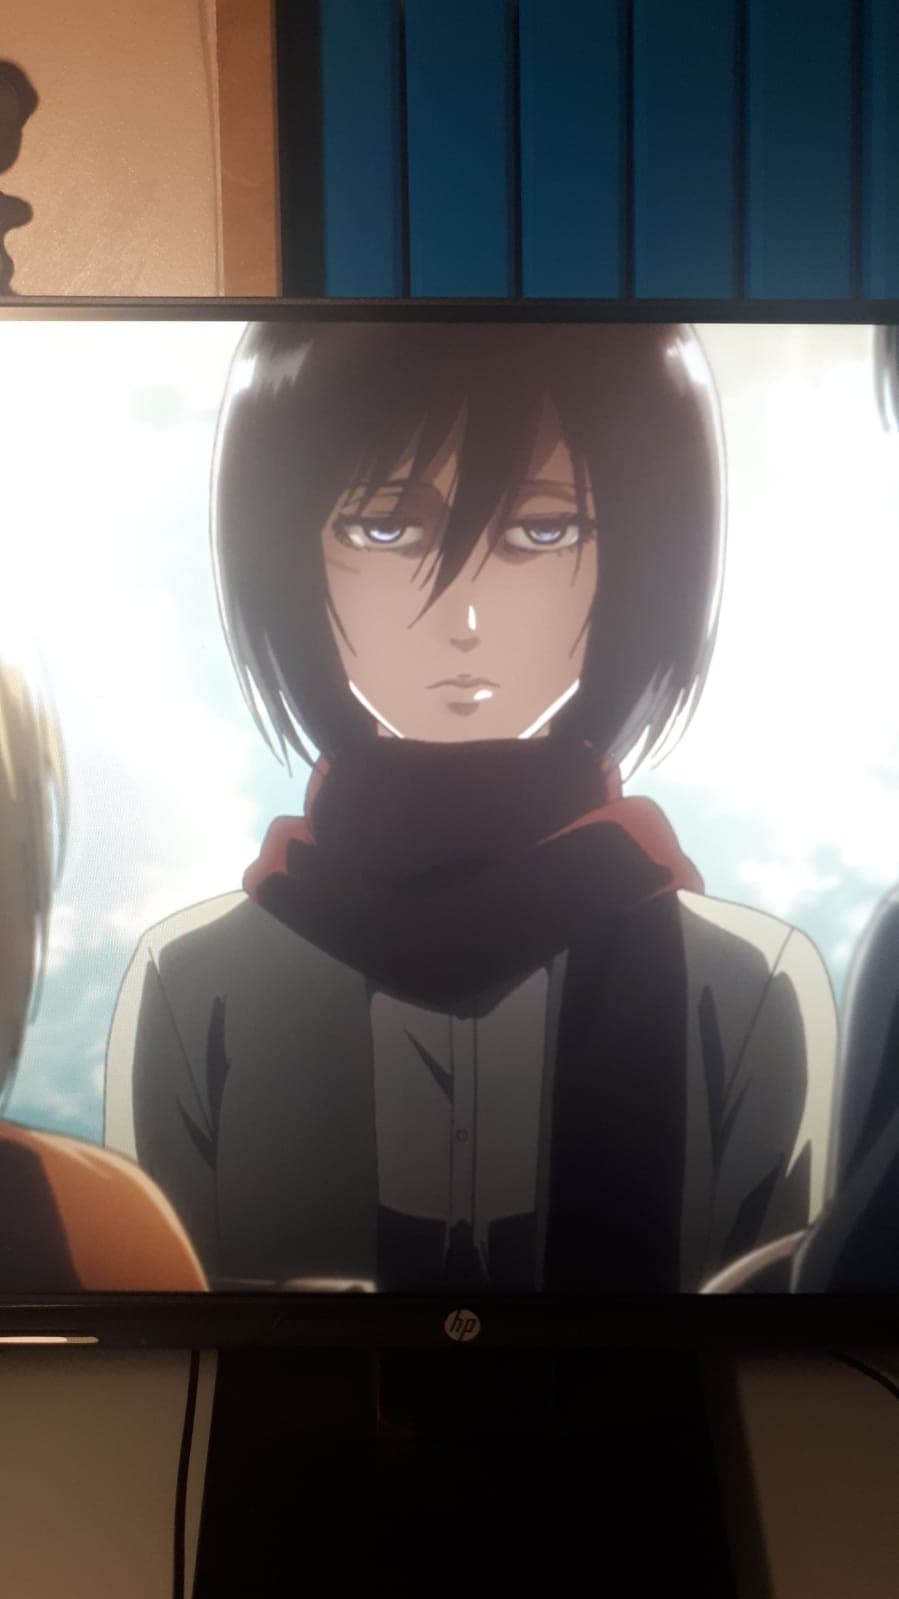 Hey Mikasa... Non sei messa molto bene?